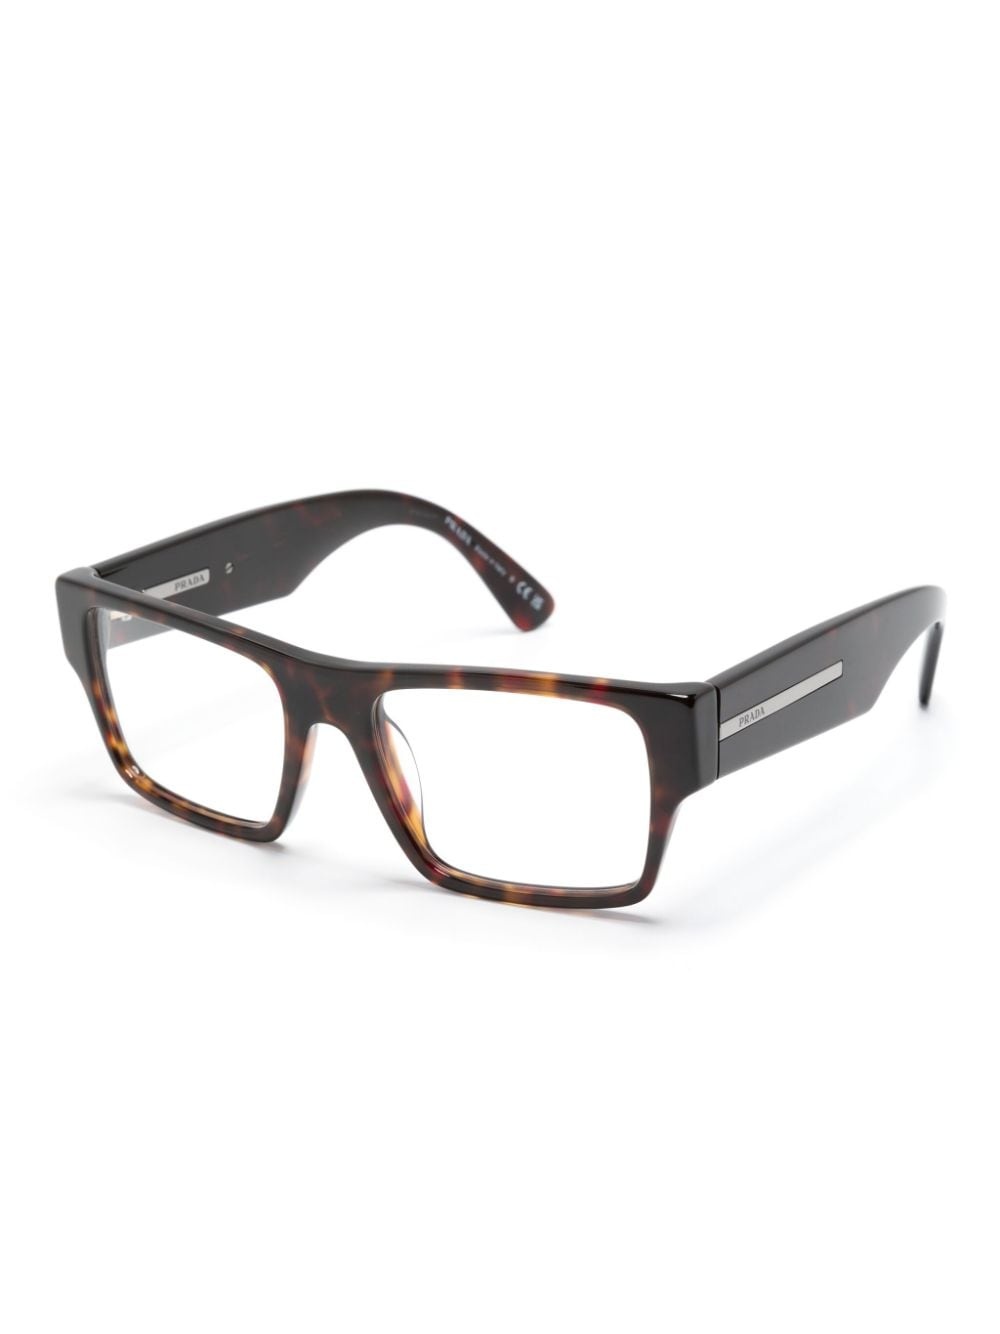 rectangle-frame glasses - 2